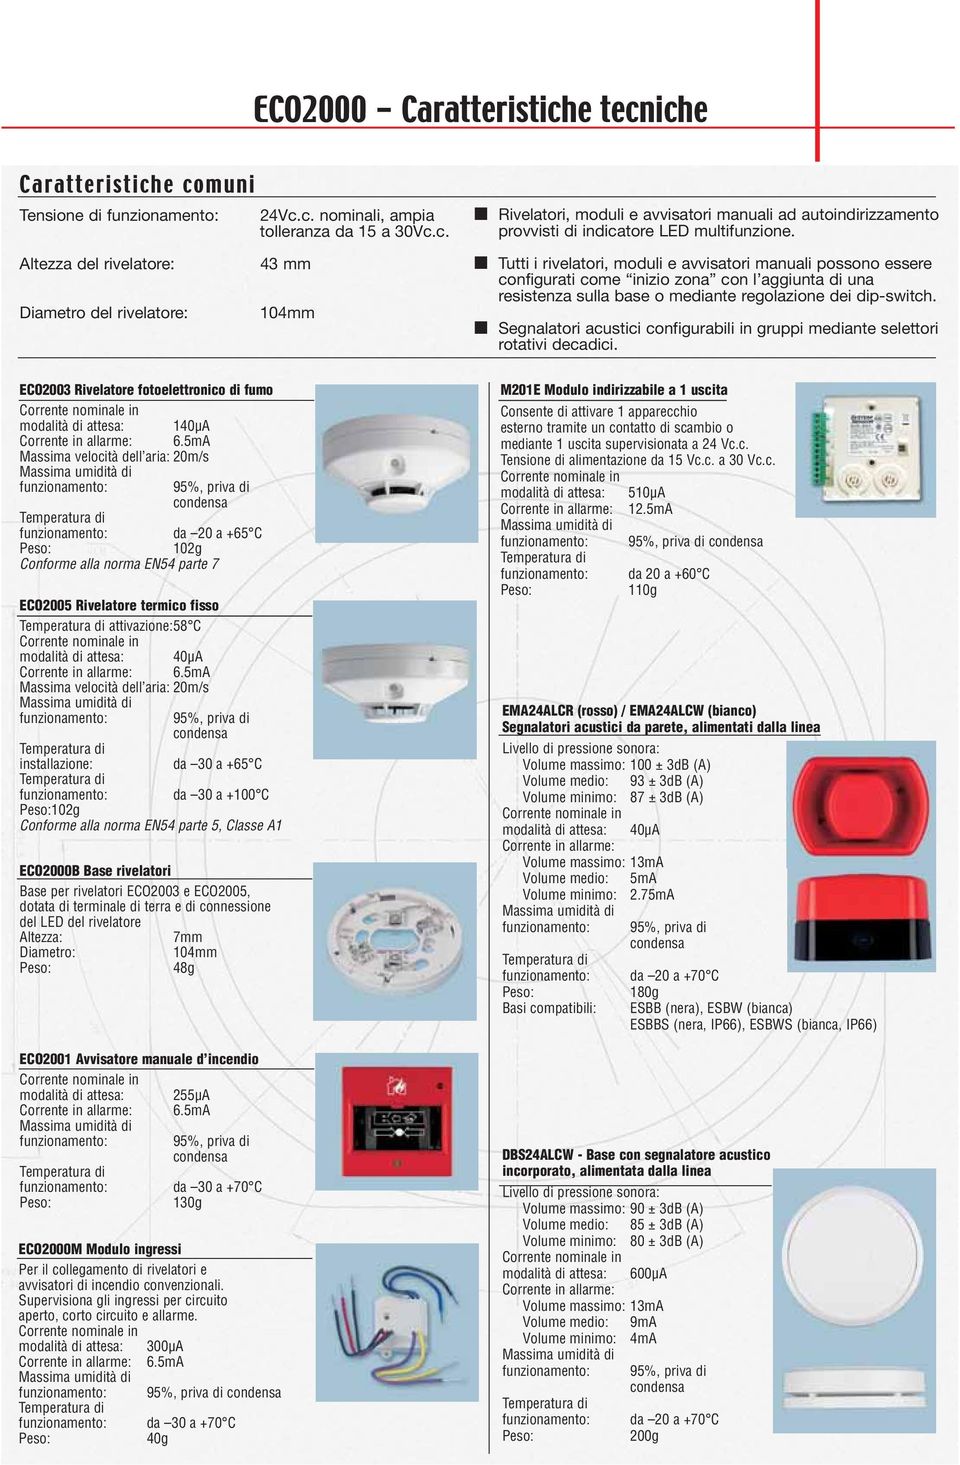 Segnalatori acustici configurabili in gruppi mediante selettori rotativi decadici. ECO2003 Rivelatore fotoelettronico di fumo modalità di attesa: 140µA Corrente in allarme: 6.